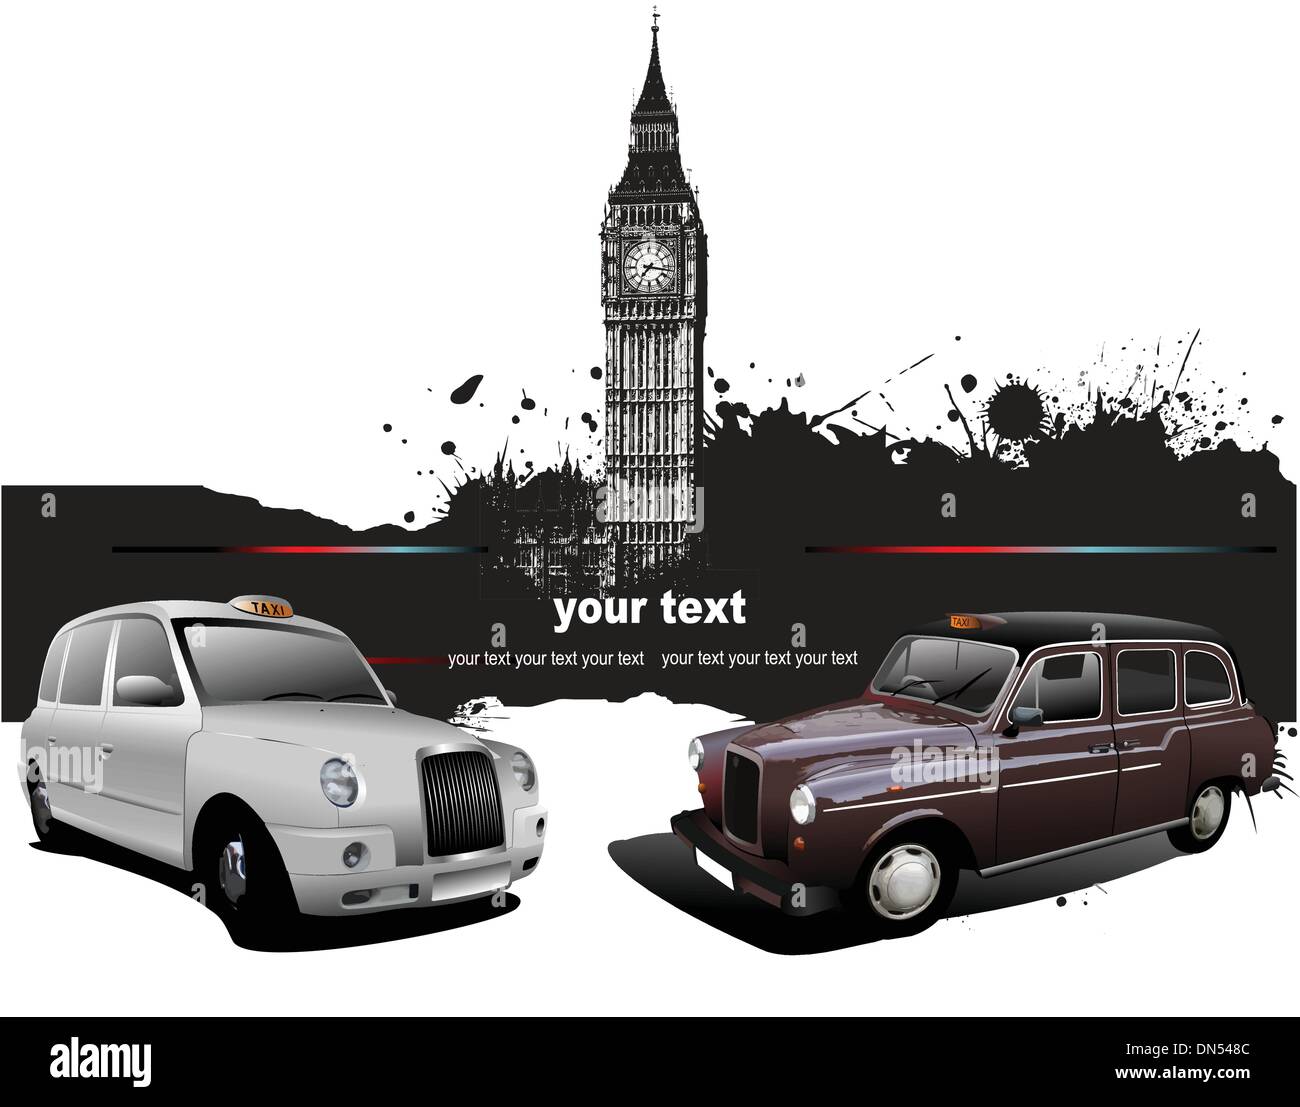 London-Hintergrund mit Big Ben und zwei Taxis. Vektor-illustra Stock Vektor